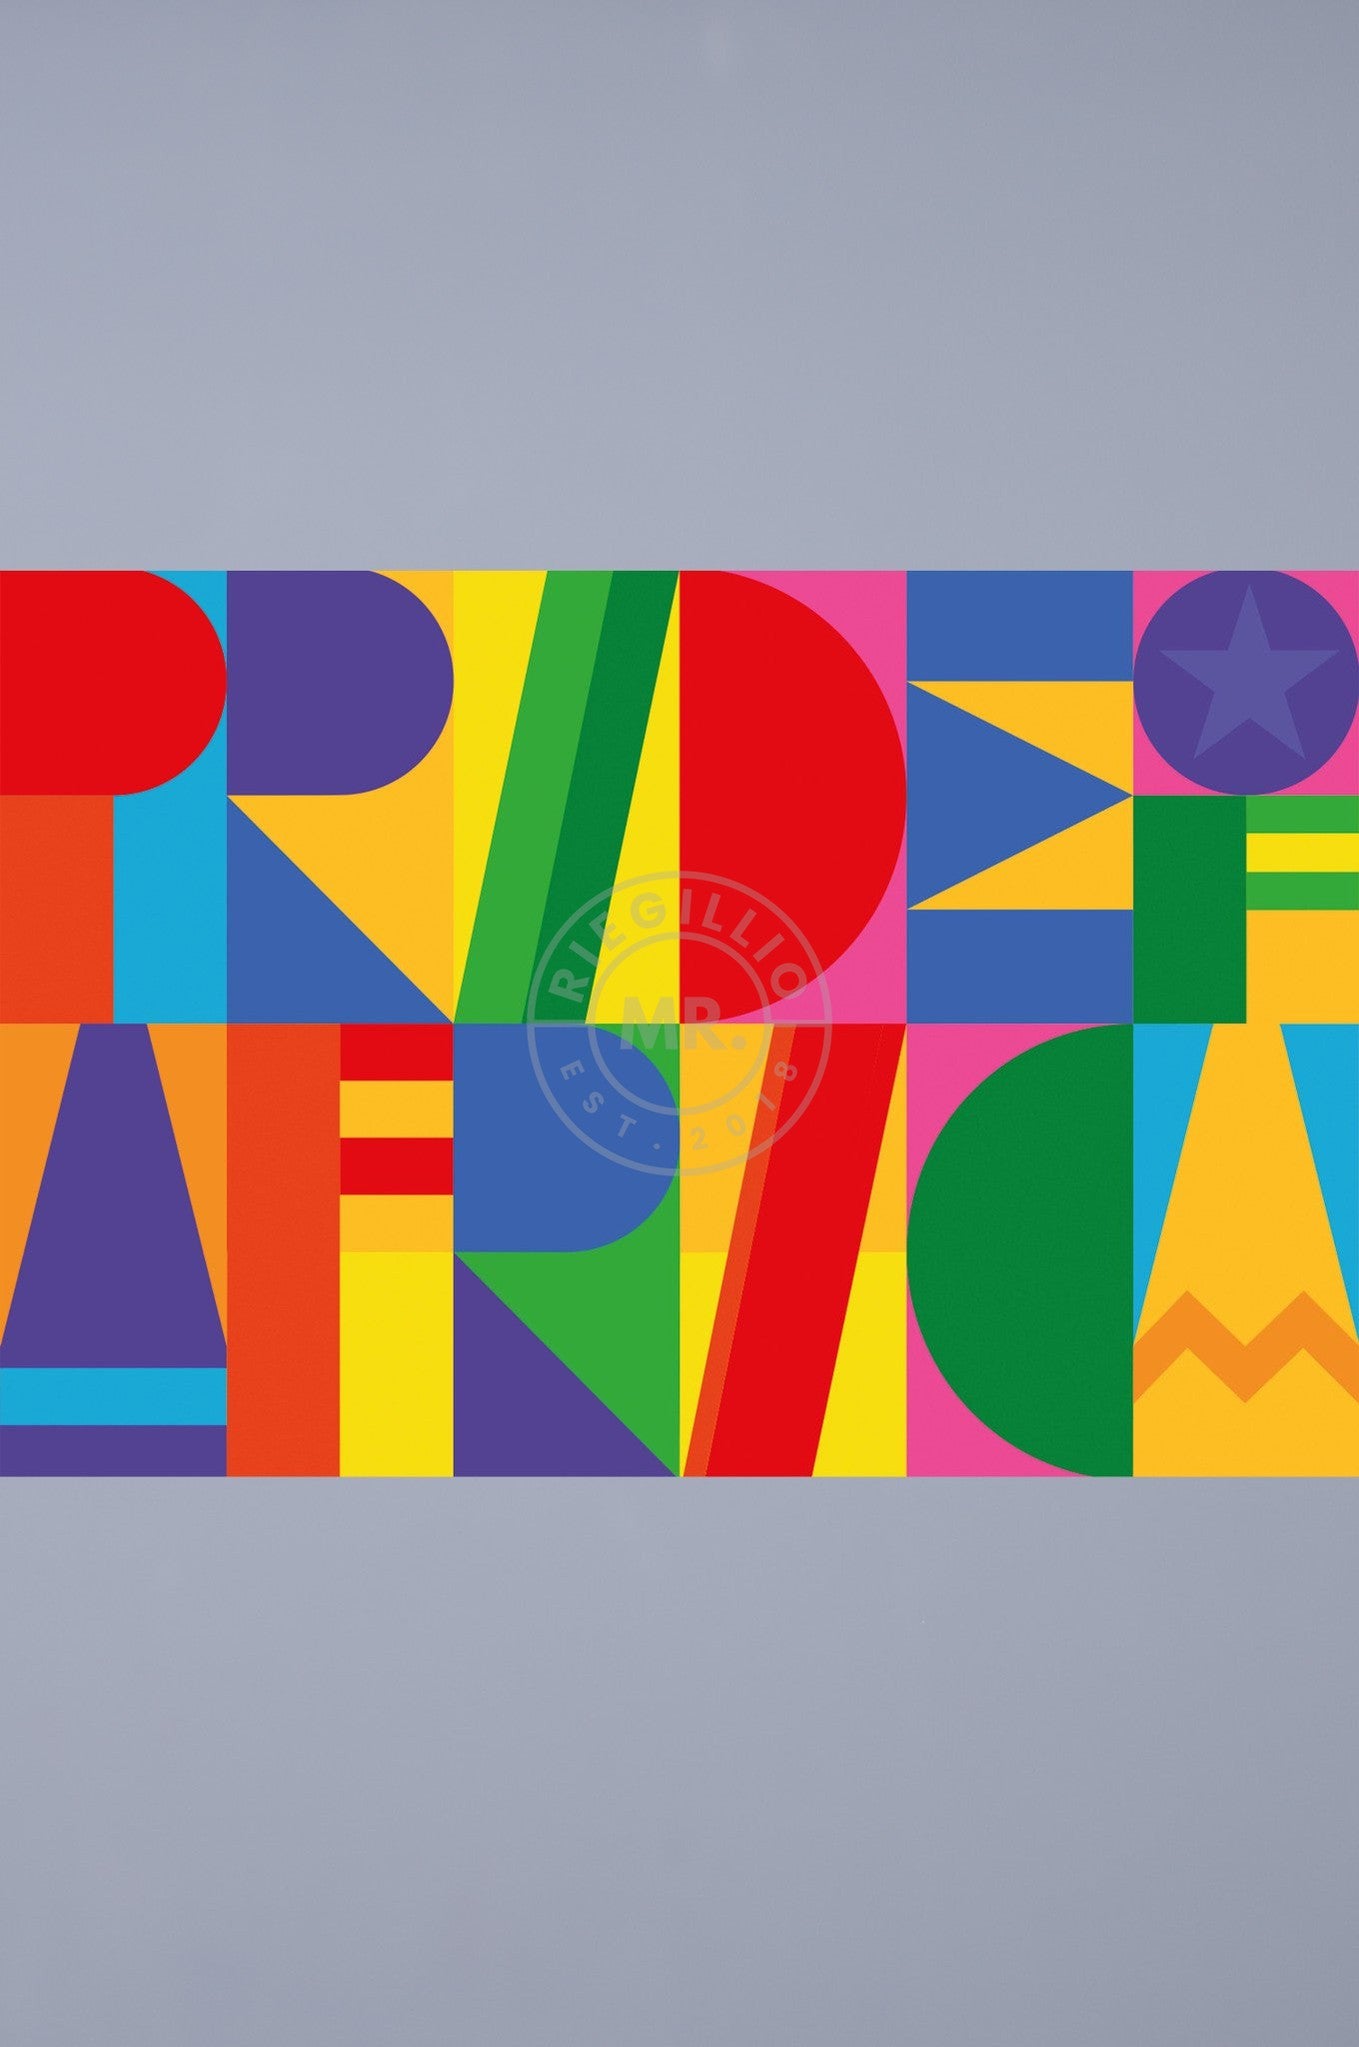 Pride Flag - Pride of Africa - 100 x 150 cm at MR. Riegillio